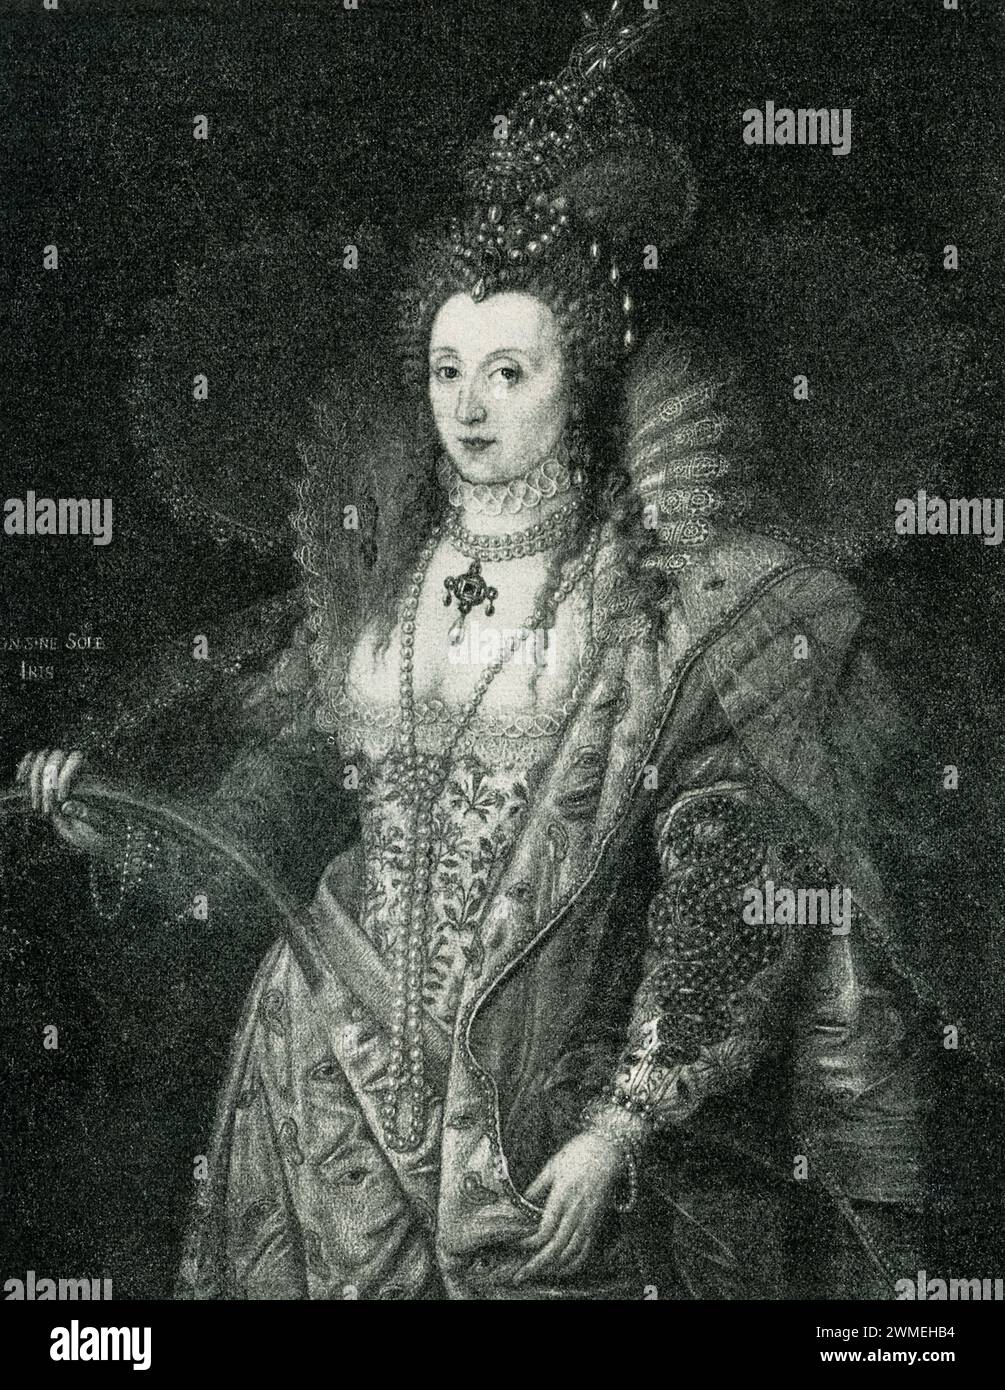 Hier wird Elisabeth I. von england als Symbol der Weisheit dargestellt.Elisabeth I. war vom 17. November 1558 bis zu ihrem Tod 1603 Königin von England und Irland. Sie war die letzte Monarchin des Hauses Tudor. Elisabeth war das einzige überlebende Kind von Heinrich VIII. Und Anne Boleyn, seiner zweiten Frau, die hingerichtet wurde, als Elisabeth zwei Jahre alt war. Dieses allegorische Gemälde stammt von dem 1609 verstorbenen italienischen Künstler Frederic Zucchero. Stockfoto